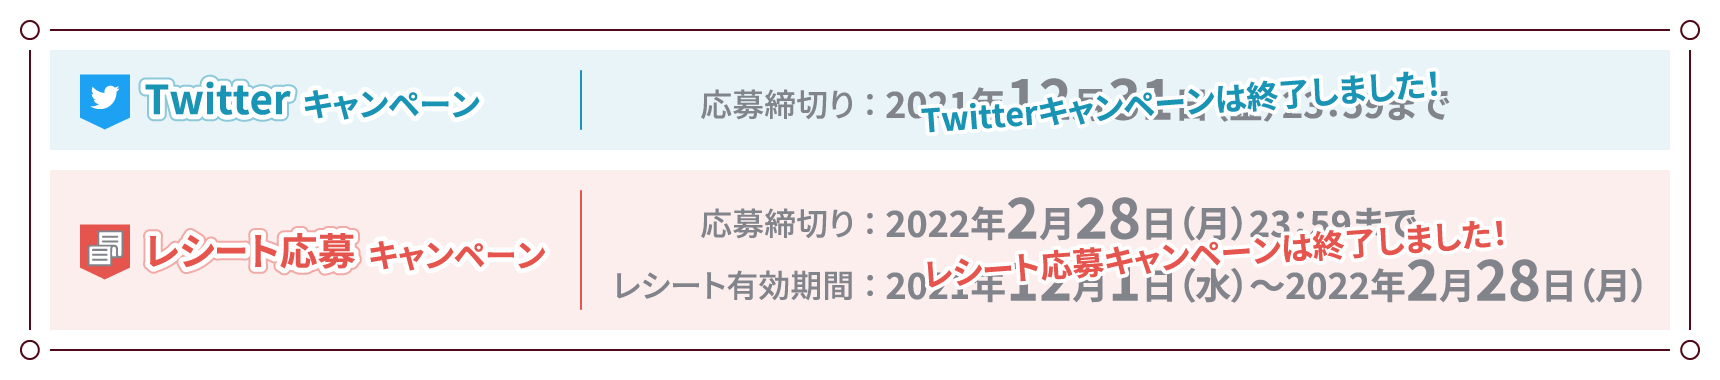 Twitterキャンペーン「応募締め切り：2021年12月31日（金）23：59まで」レシート応募キャンペーン「応募締切り：2022年2月28日（月）23：59まで レシート有効期間：2021年12月1日（水）〜2022年2月28日（月）」